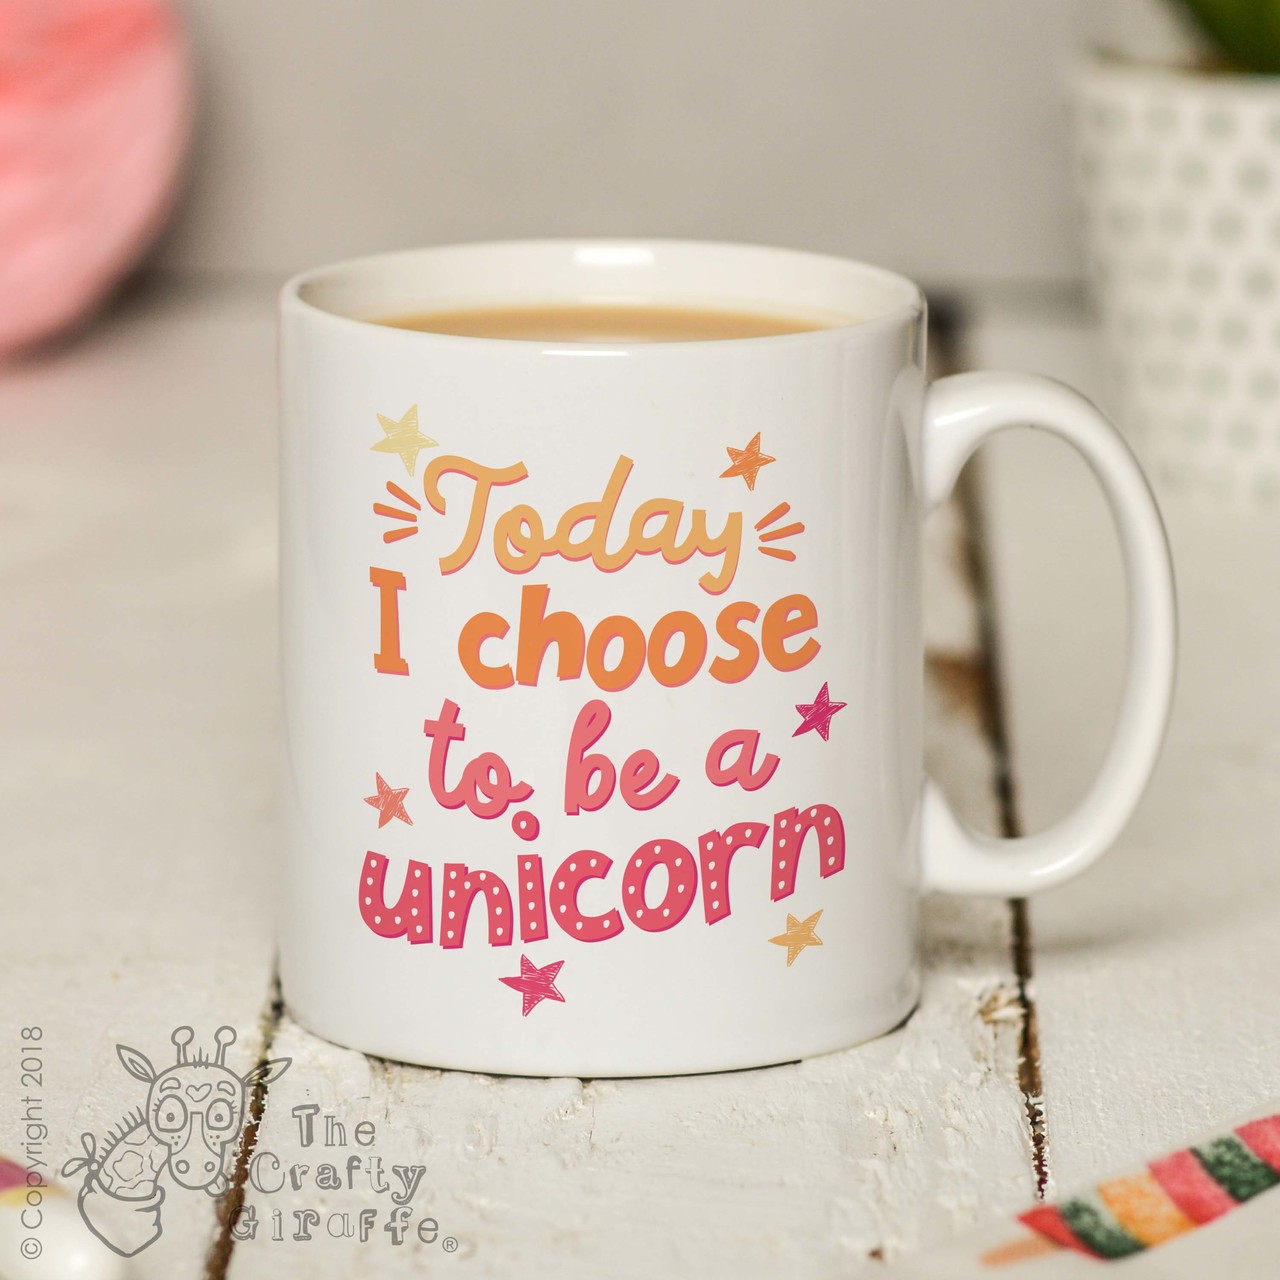 Today I choose to be a unicorn Mug